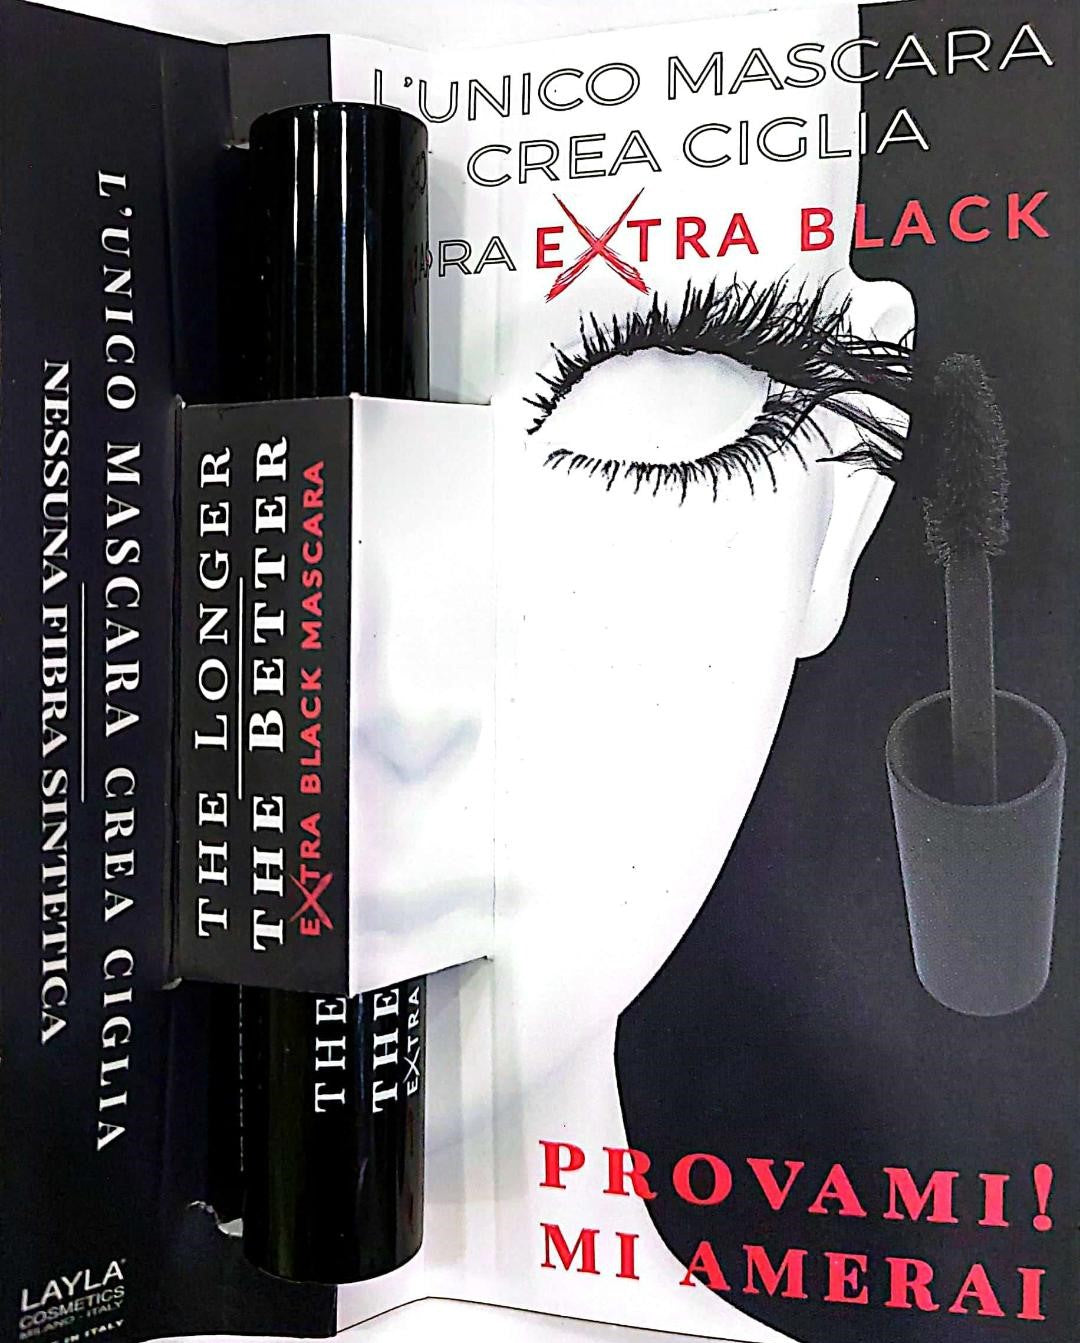 Mascara Layla Extra Black "crea ciglia" The Longer The Better Mini Mascara Tester | RossoLacca